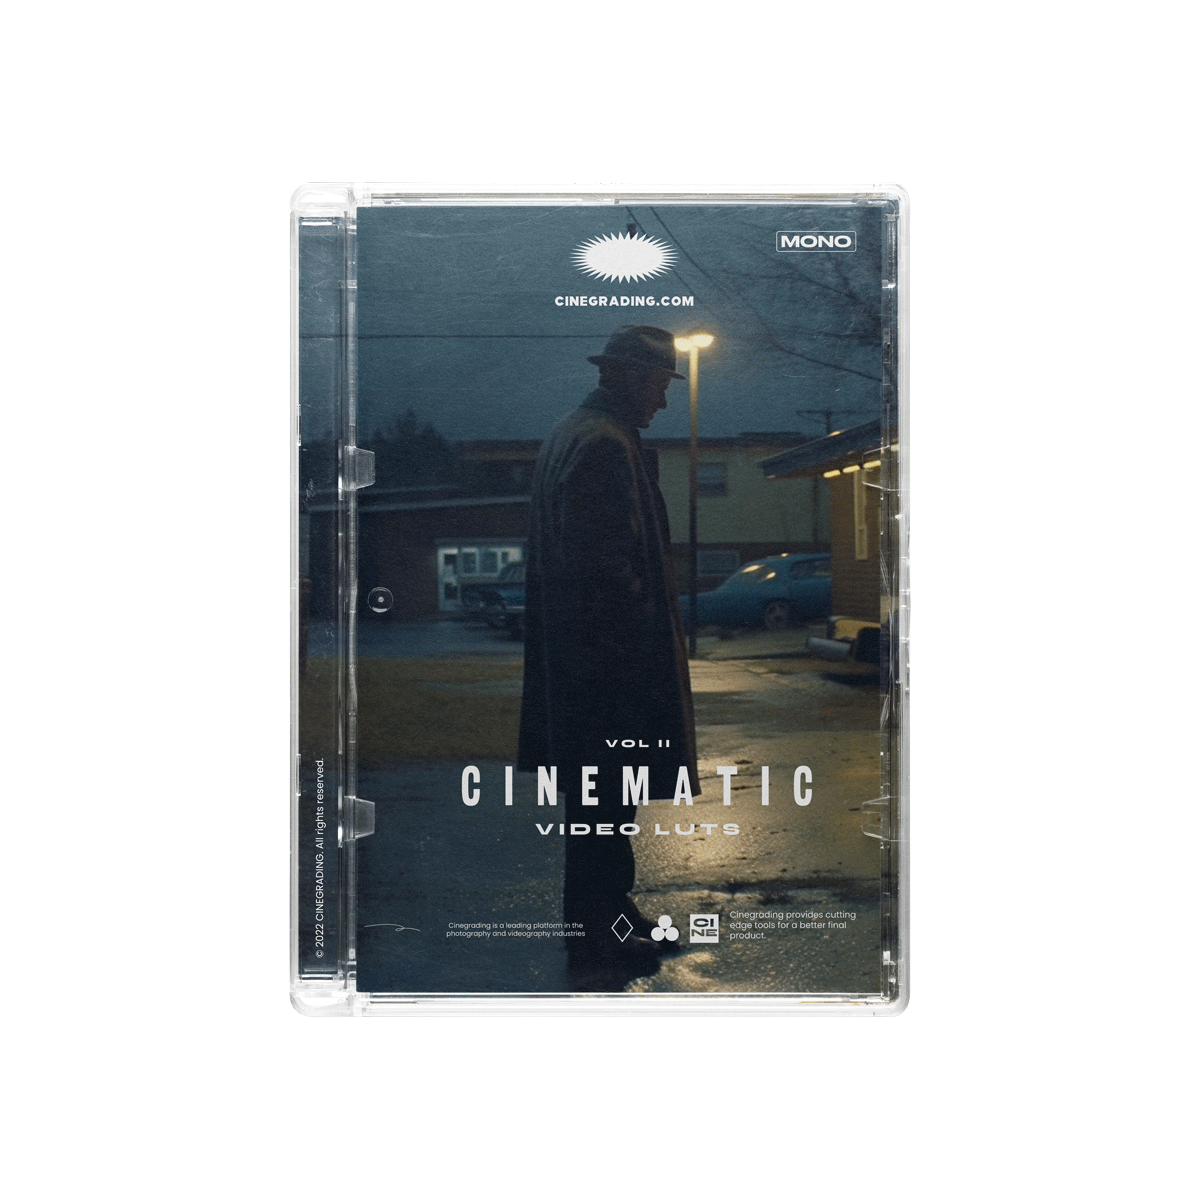 +Cine Cinematic LUTs Vol. II